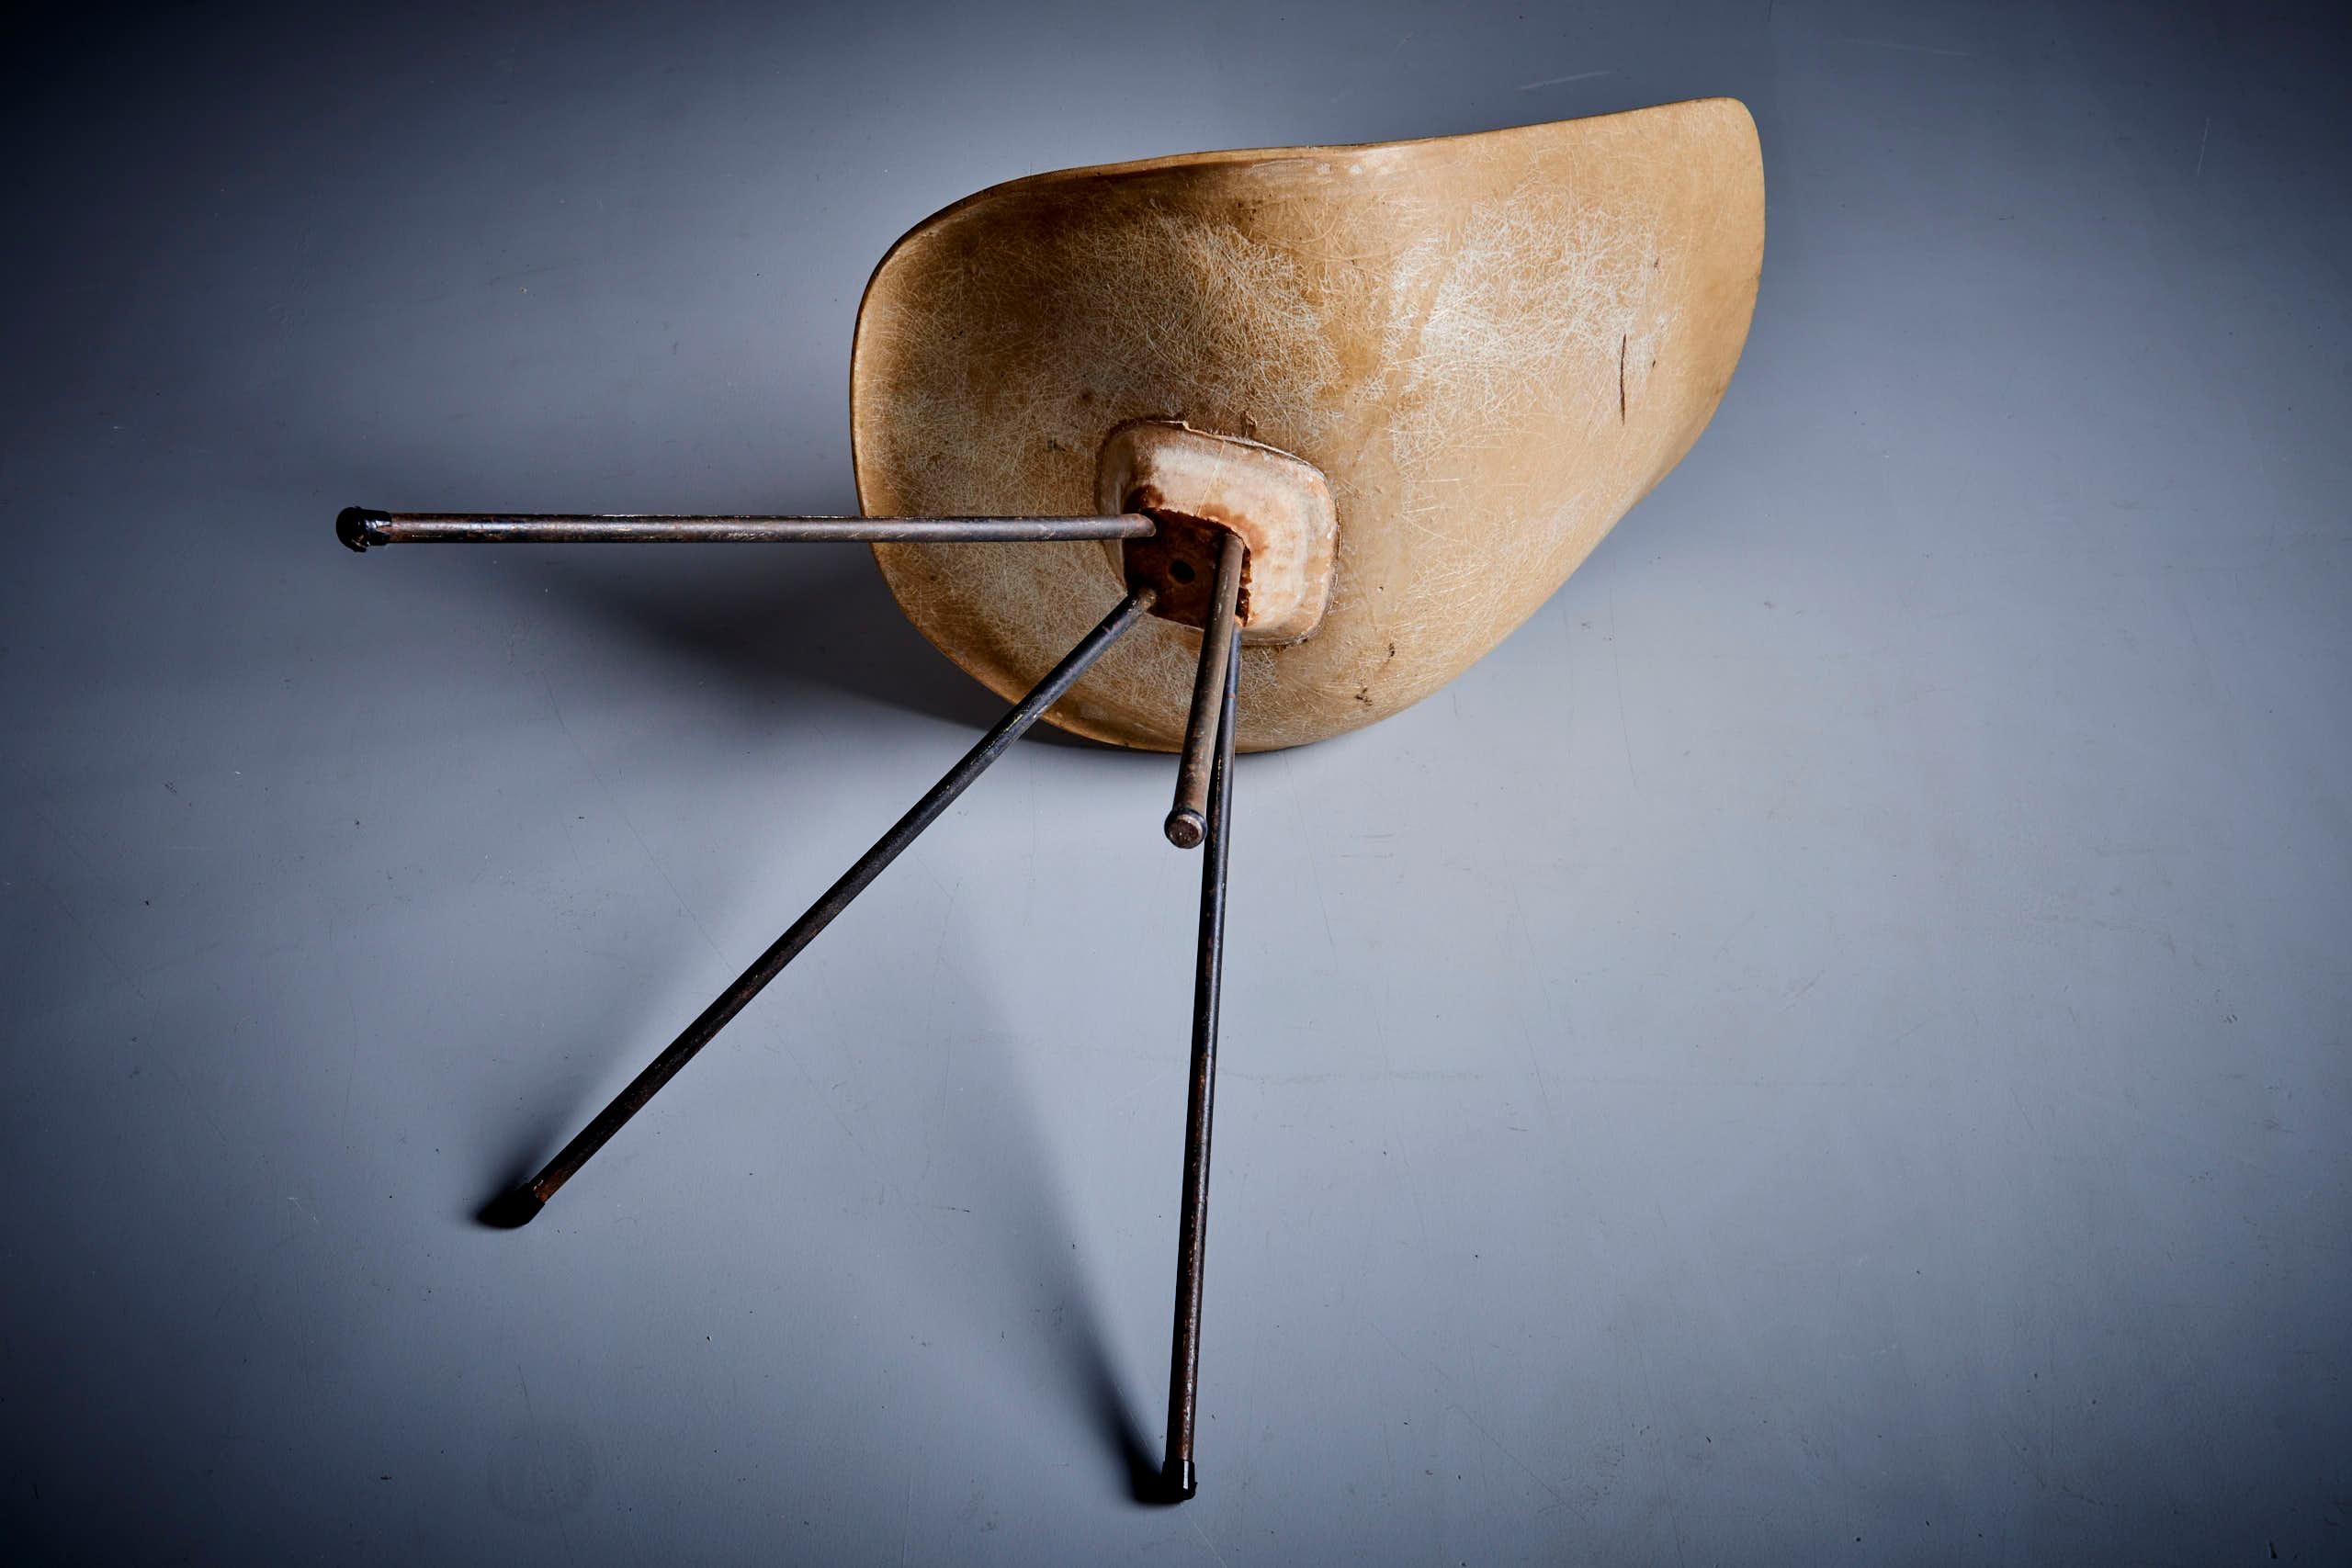 Jean-René Picard for S.E.T.A Fiberglass Chair France - 1950s For Sale 4